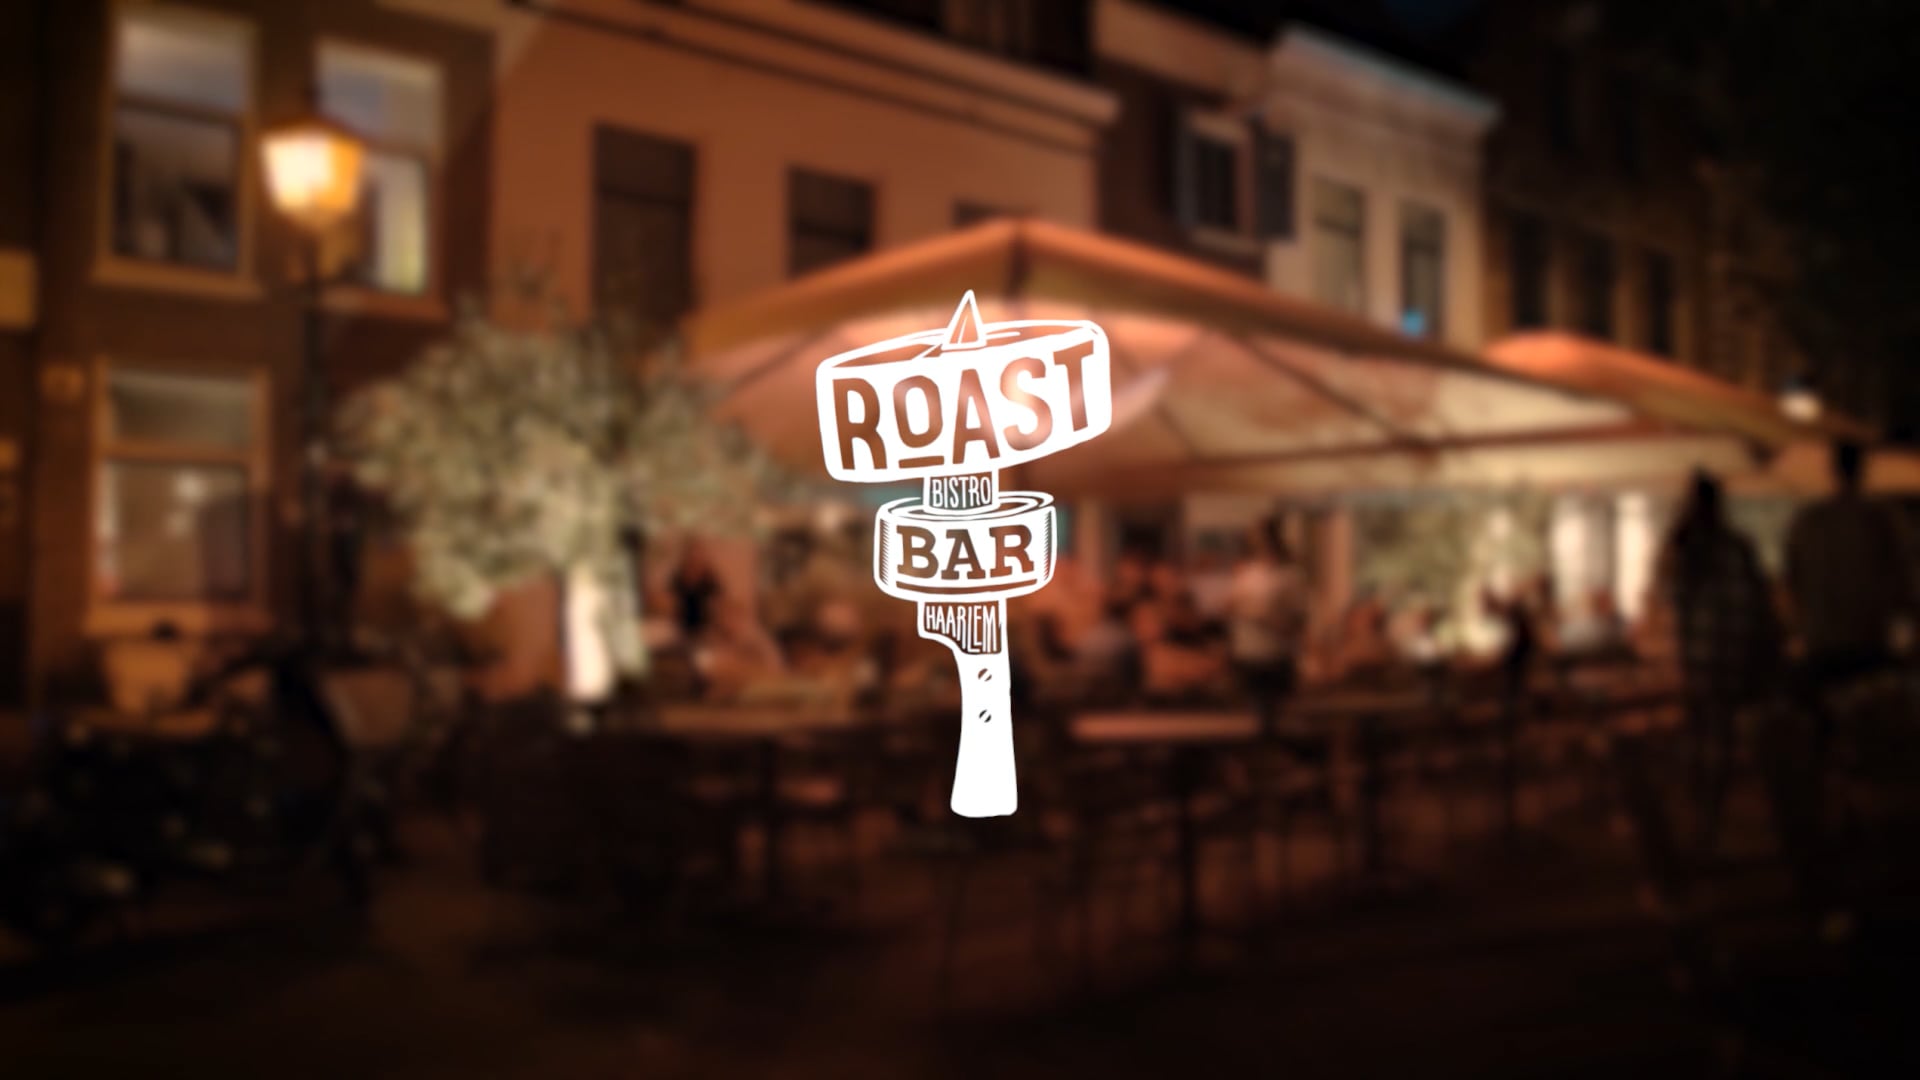 Roast Bistro Bar | Promotiefilm